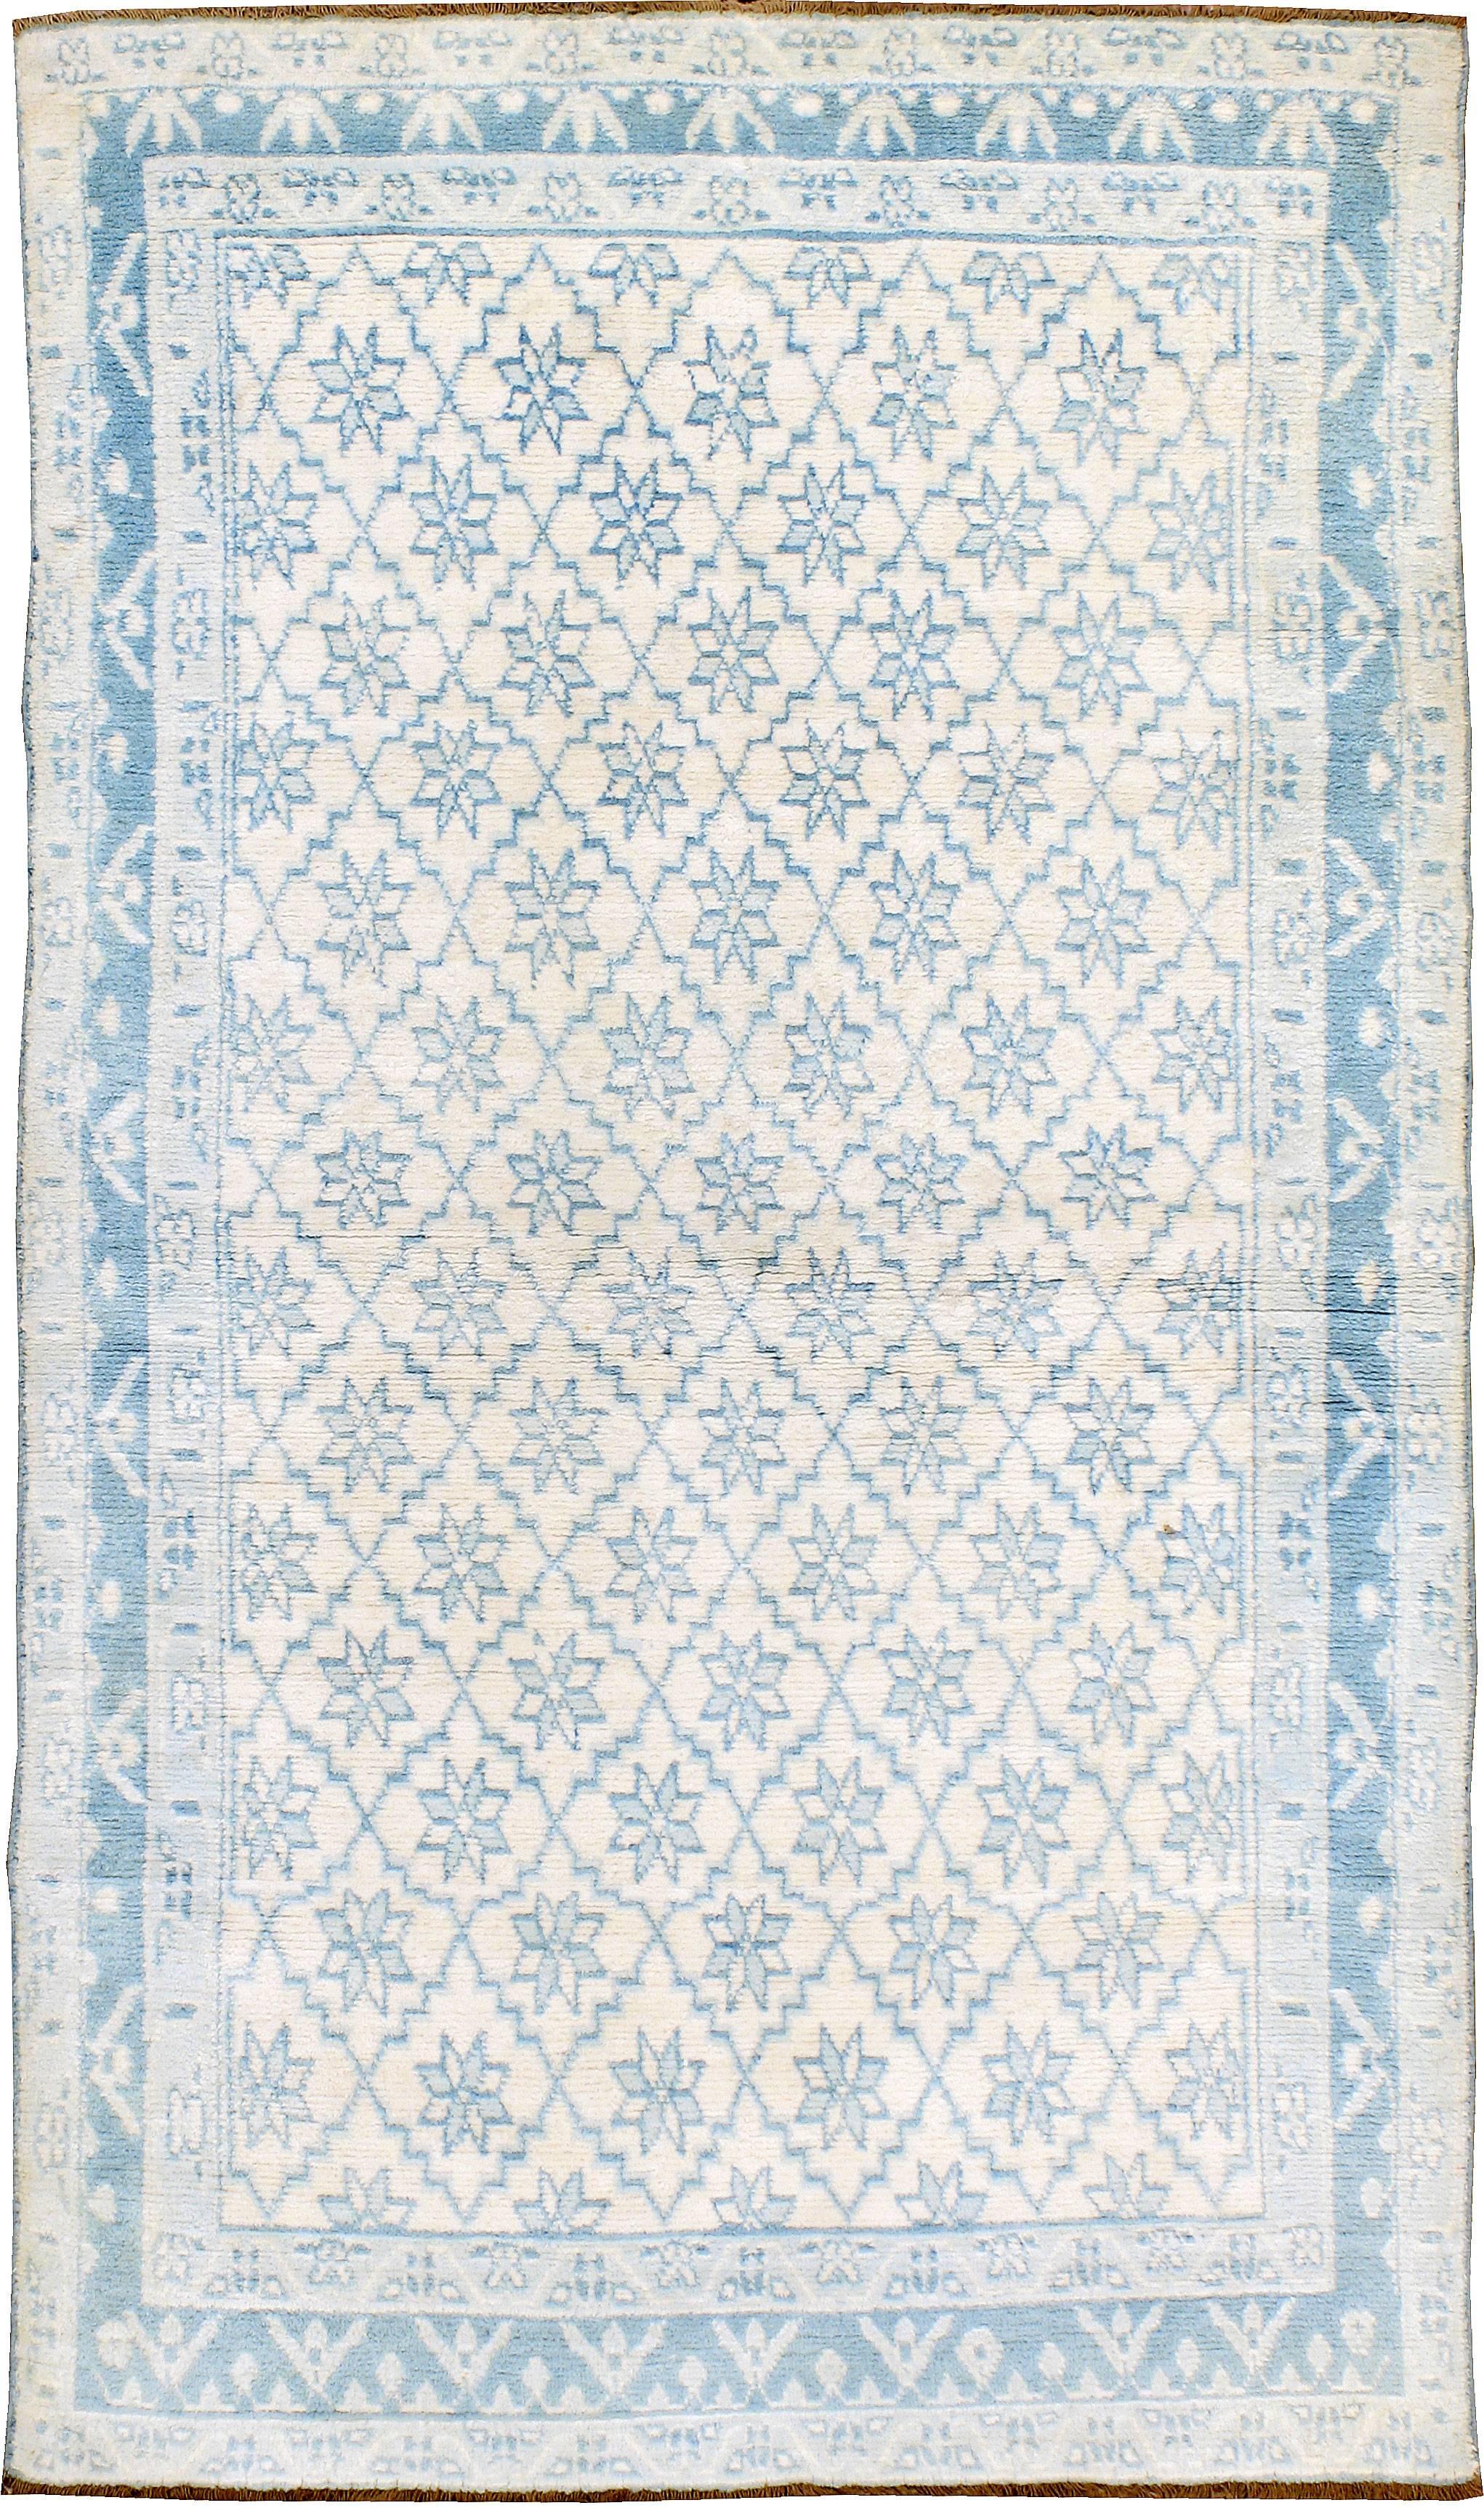 Ein alter indischer Agra-Teppich aus Baumwolle aus dem zweiten Viertel des 20. Jahrhunderts mit einem sich wiederholenden Blumenmuster innerhalb eines Rautenmusters.